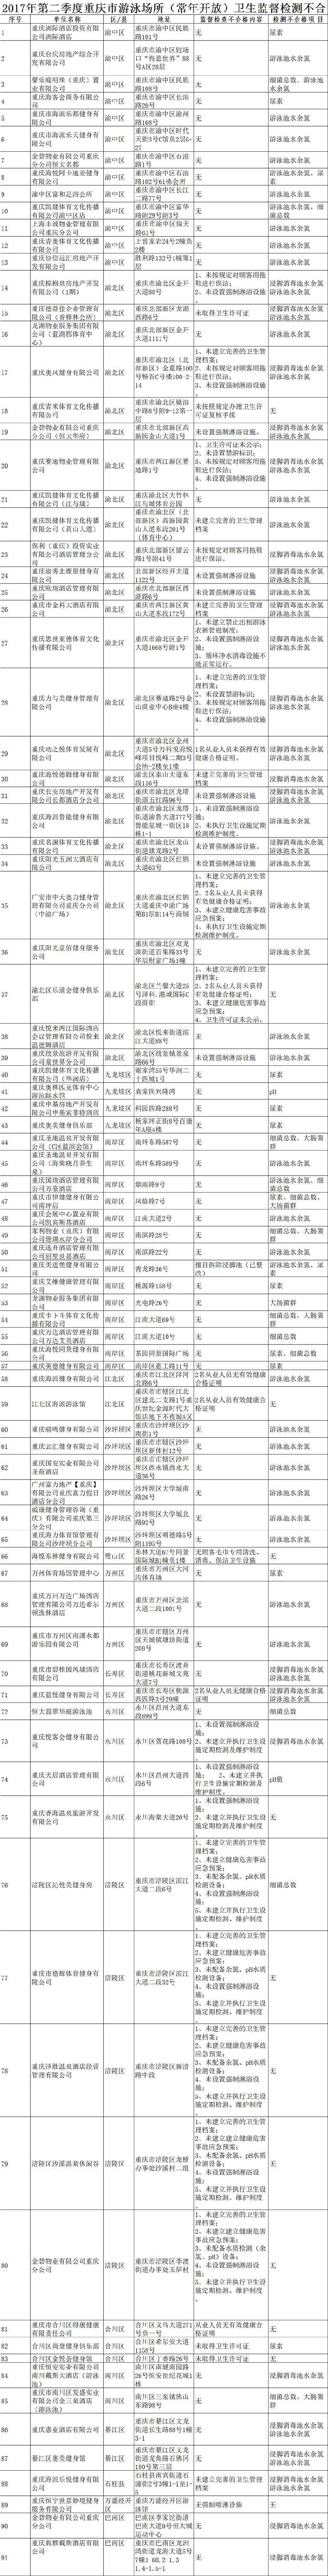 【社会民生】重庆查出91家游泳场馆不合格 名单曝光